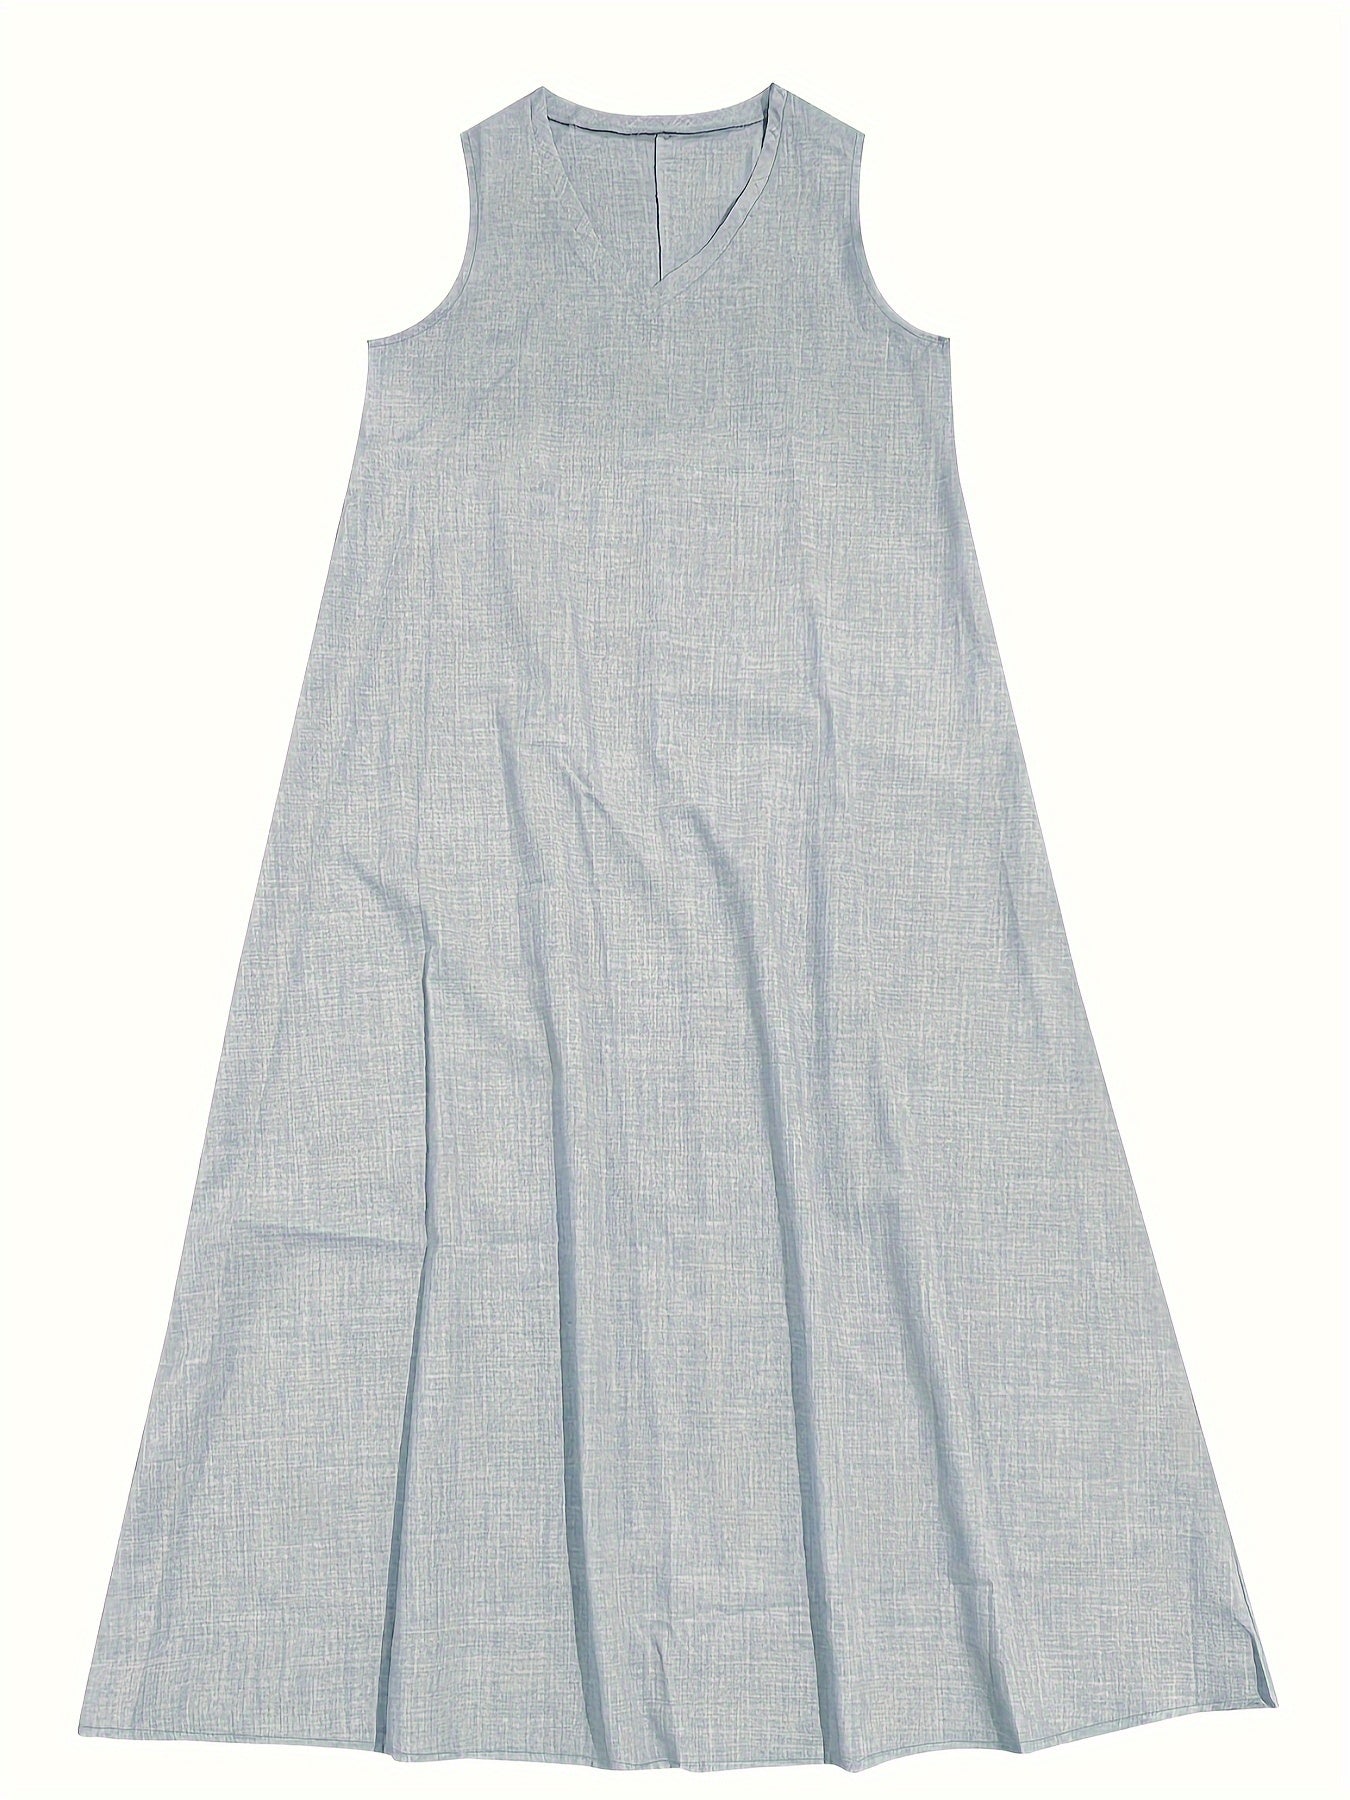 Casual Sleeveless Linen Dress - Bohemian Long Maxi Dress - Casual Summer Dress